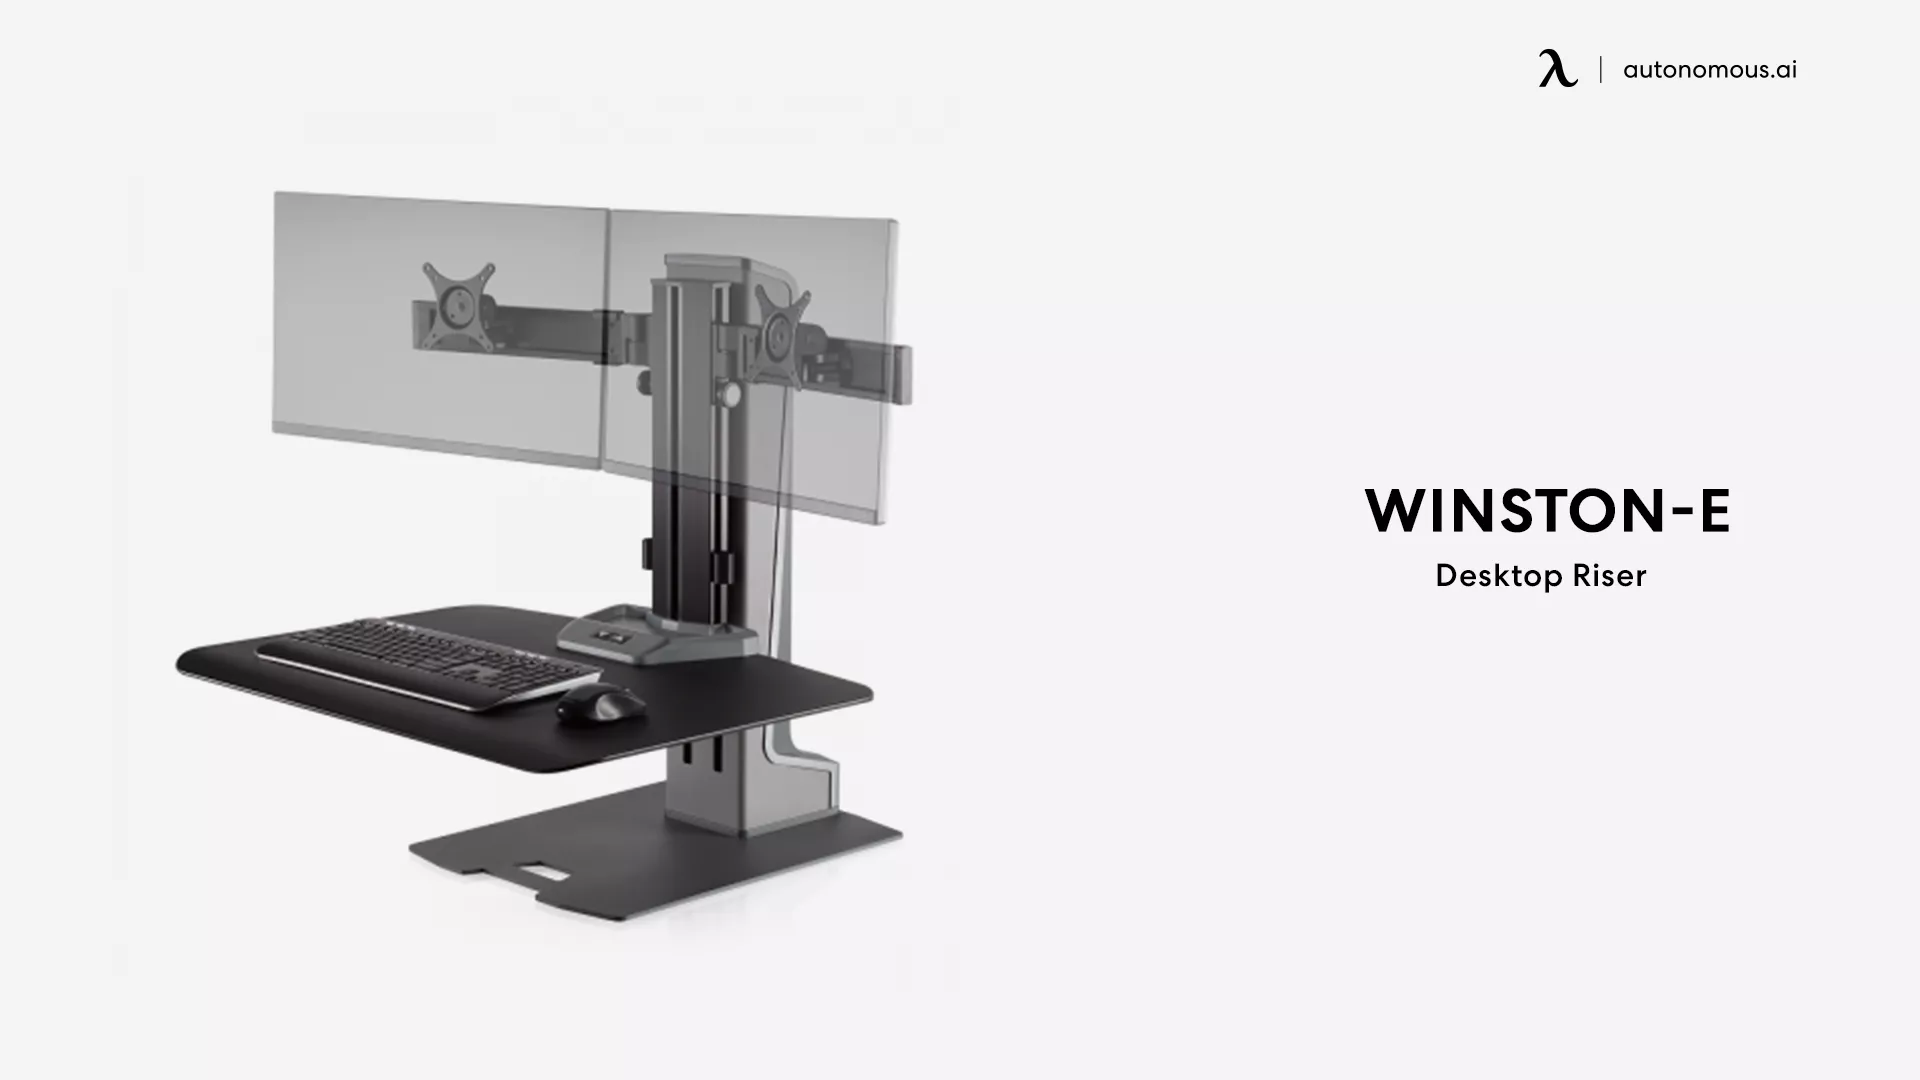 Desktop Riser by Winston-E - portable standing desk converter